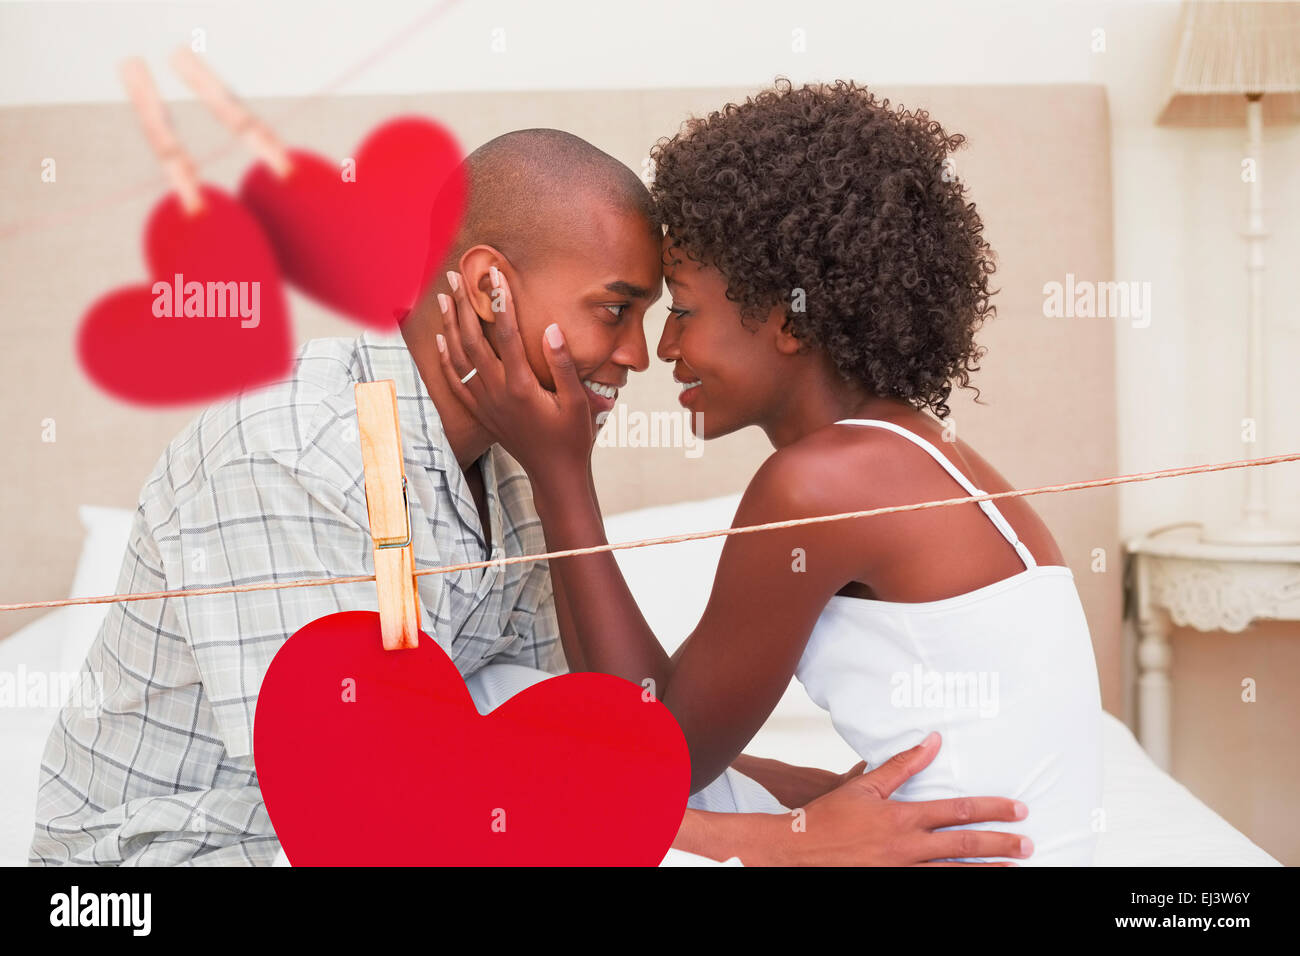 Image composite de l'heureux couple montrer de l'affection on bed Banque D'Images